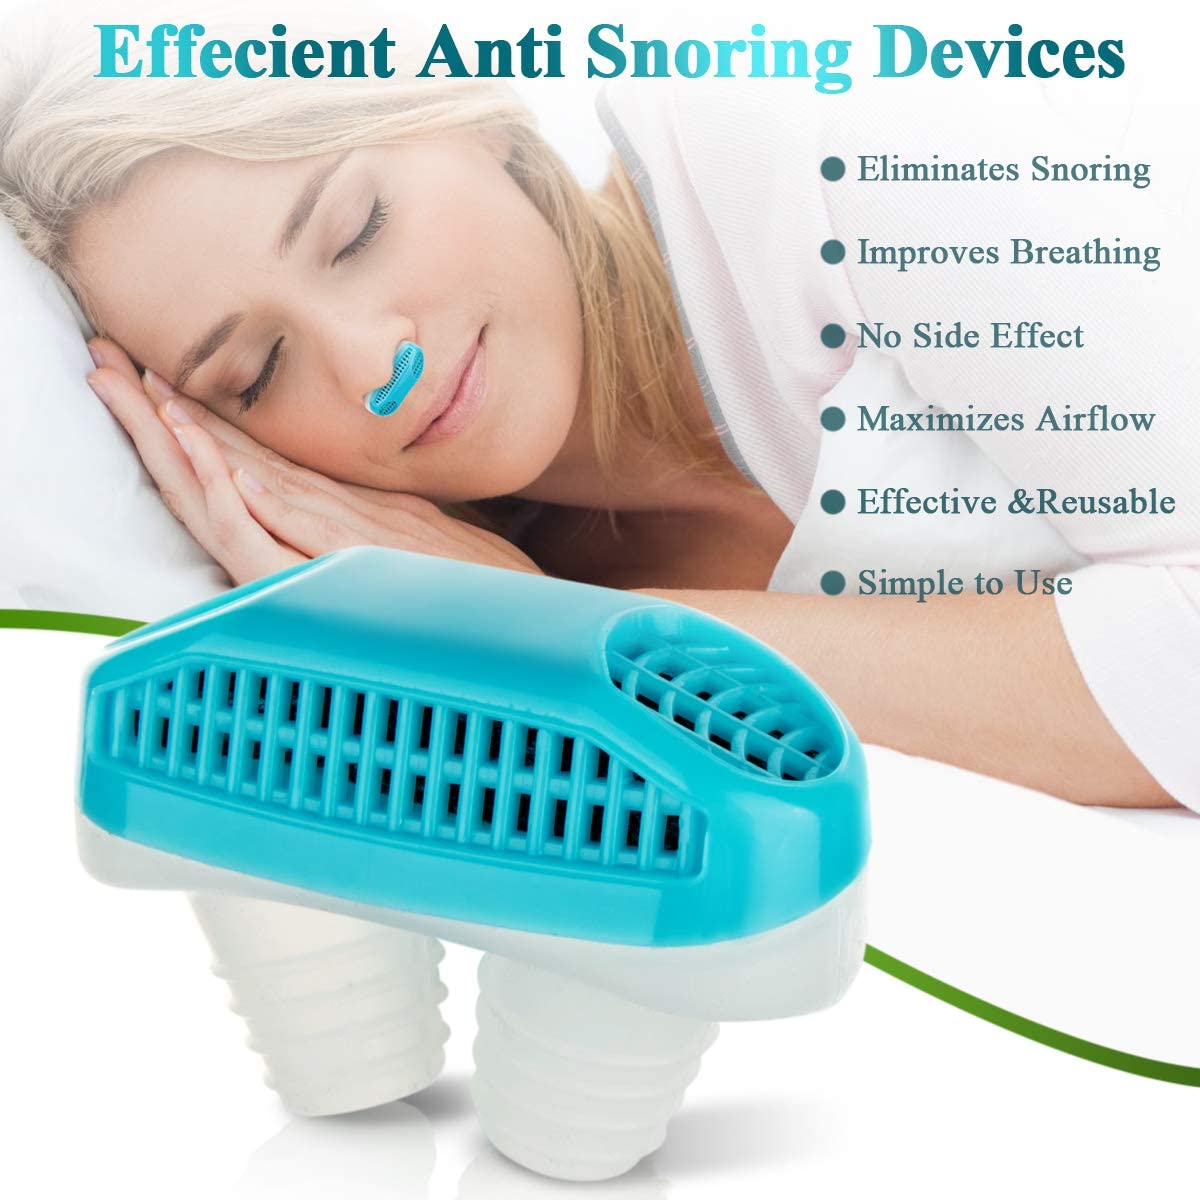 ອຸ​ປະ​ກອນ​ການ​ນອນ​ກົນ​ເຄື່ອງ​ຟອກ​ອາ​ກາດ​ອັດ​ສະ​ລິ​ຍະ Portable ອຸ​ປະ​ກອນ​ຕ້ານ​ການ snoring Device01